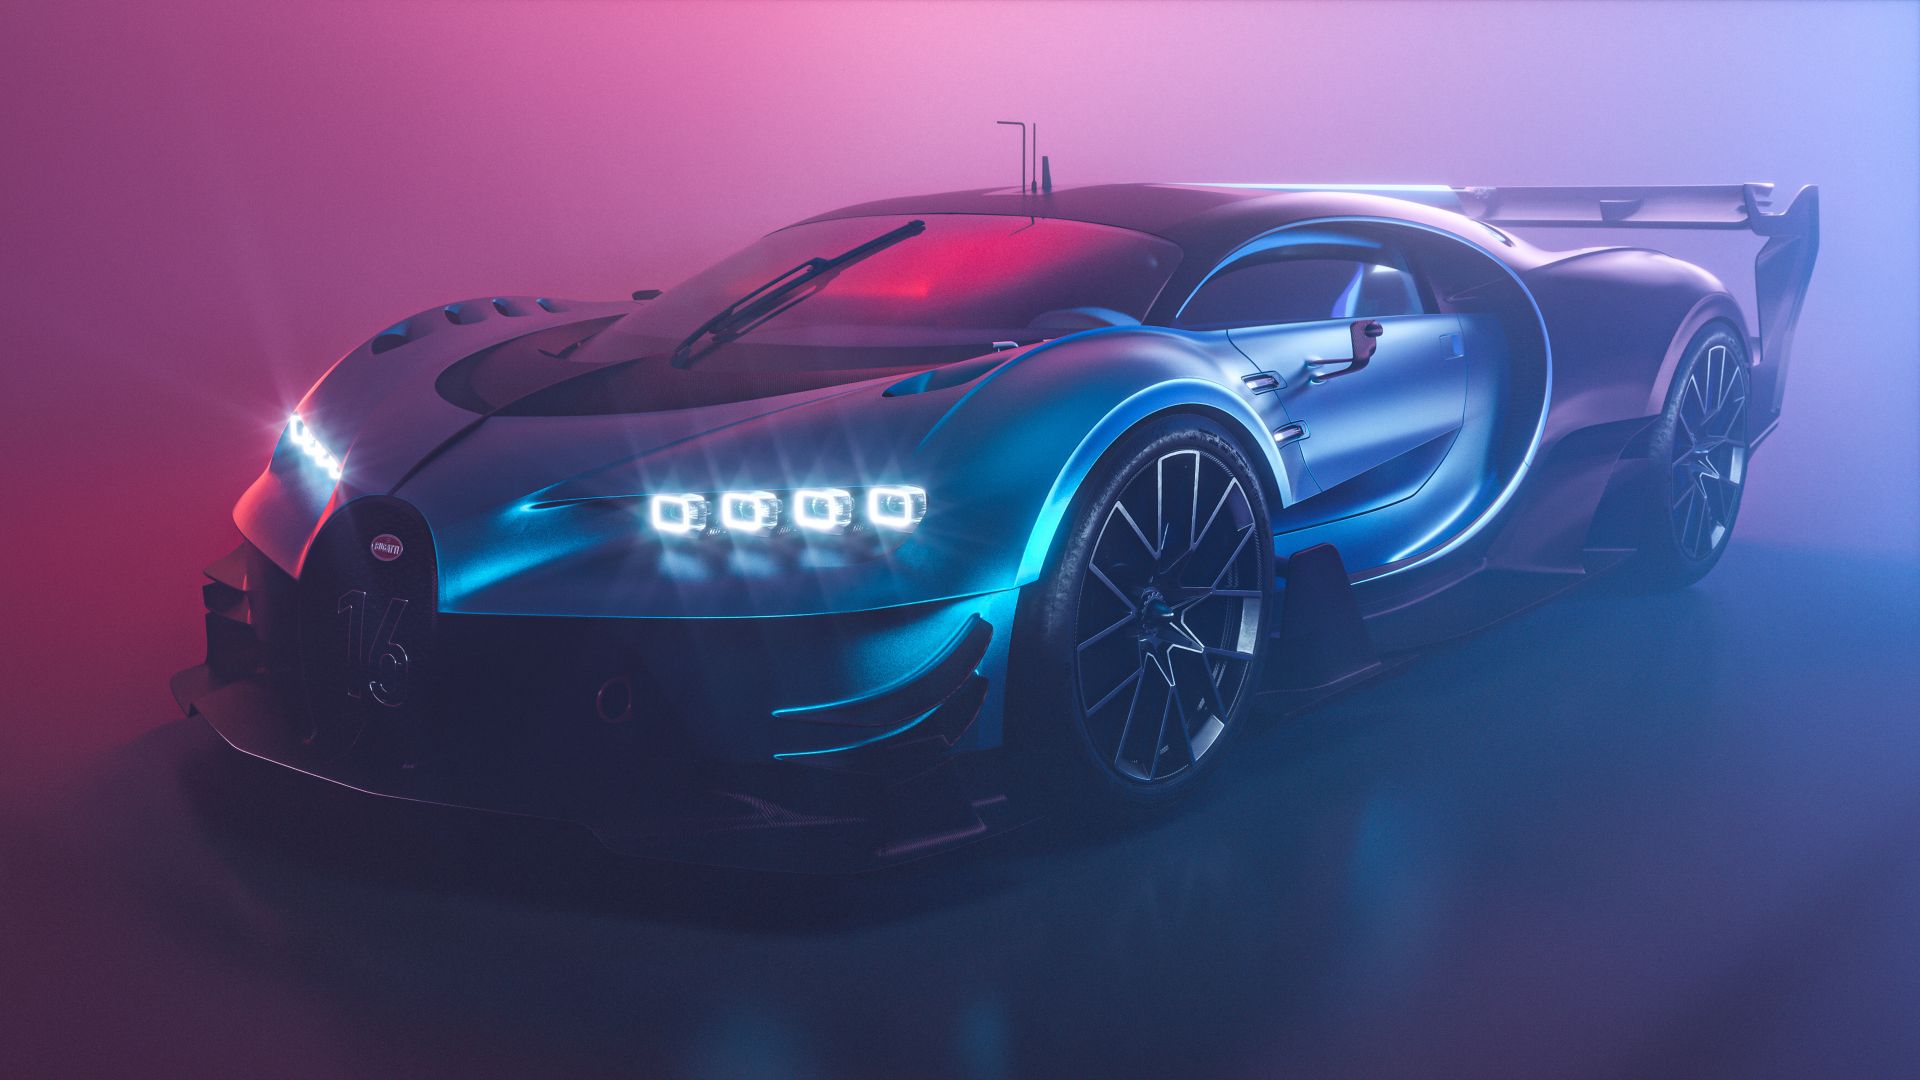 Đón nhận sự mạnh mẽ và đẳng cấp đến từ chiếc xe thể thao hạng sang Bugatti Chiron cùng hình nền đầy ấn tượng này. Tận hưởng mọi chi tiết trên chiếc xe được thiết kế tinh xảo và đầy sức mạnh, đồng thời nhận được những cảm xúc rực rỡ khi ngắm nhìn tấm nền này trên màn hình của bạn. 